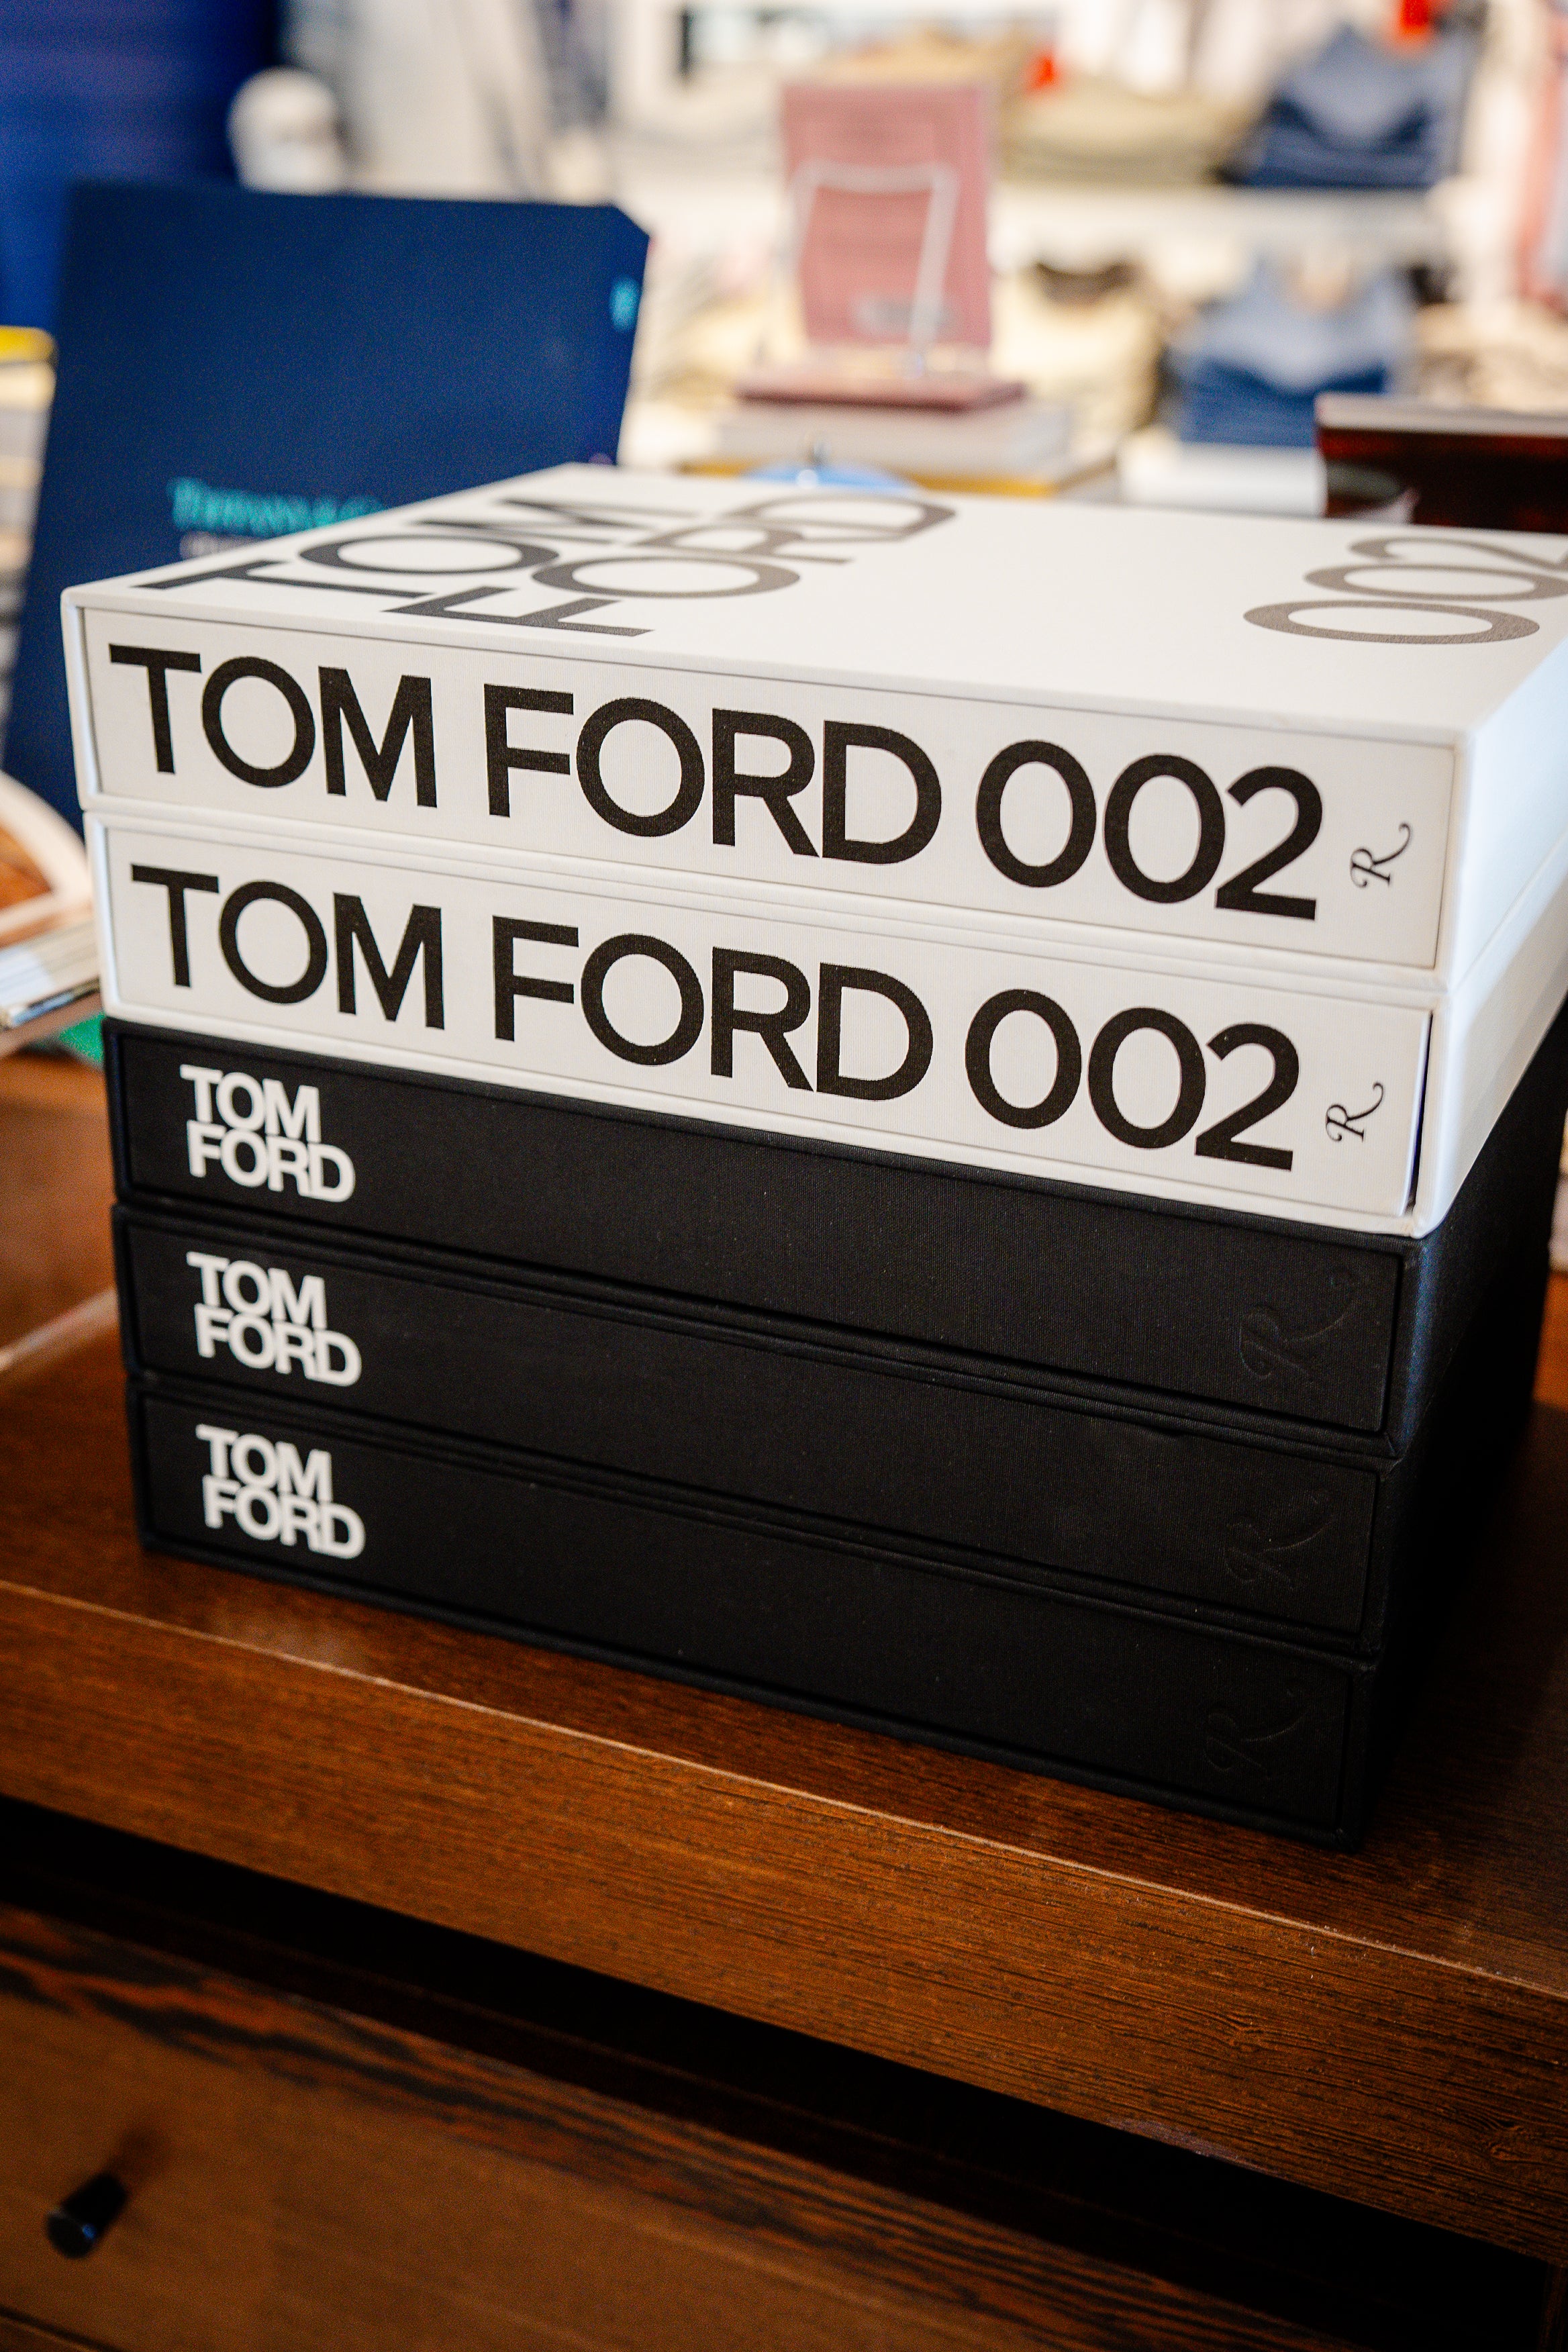 Tom Ford - 002